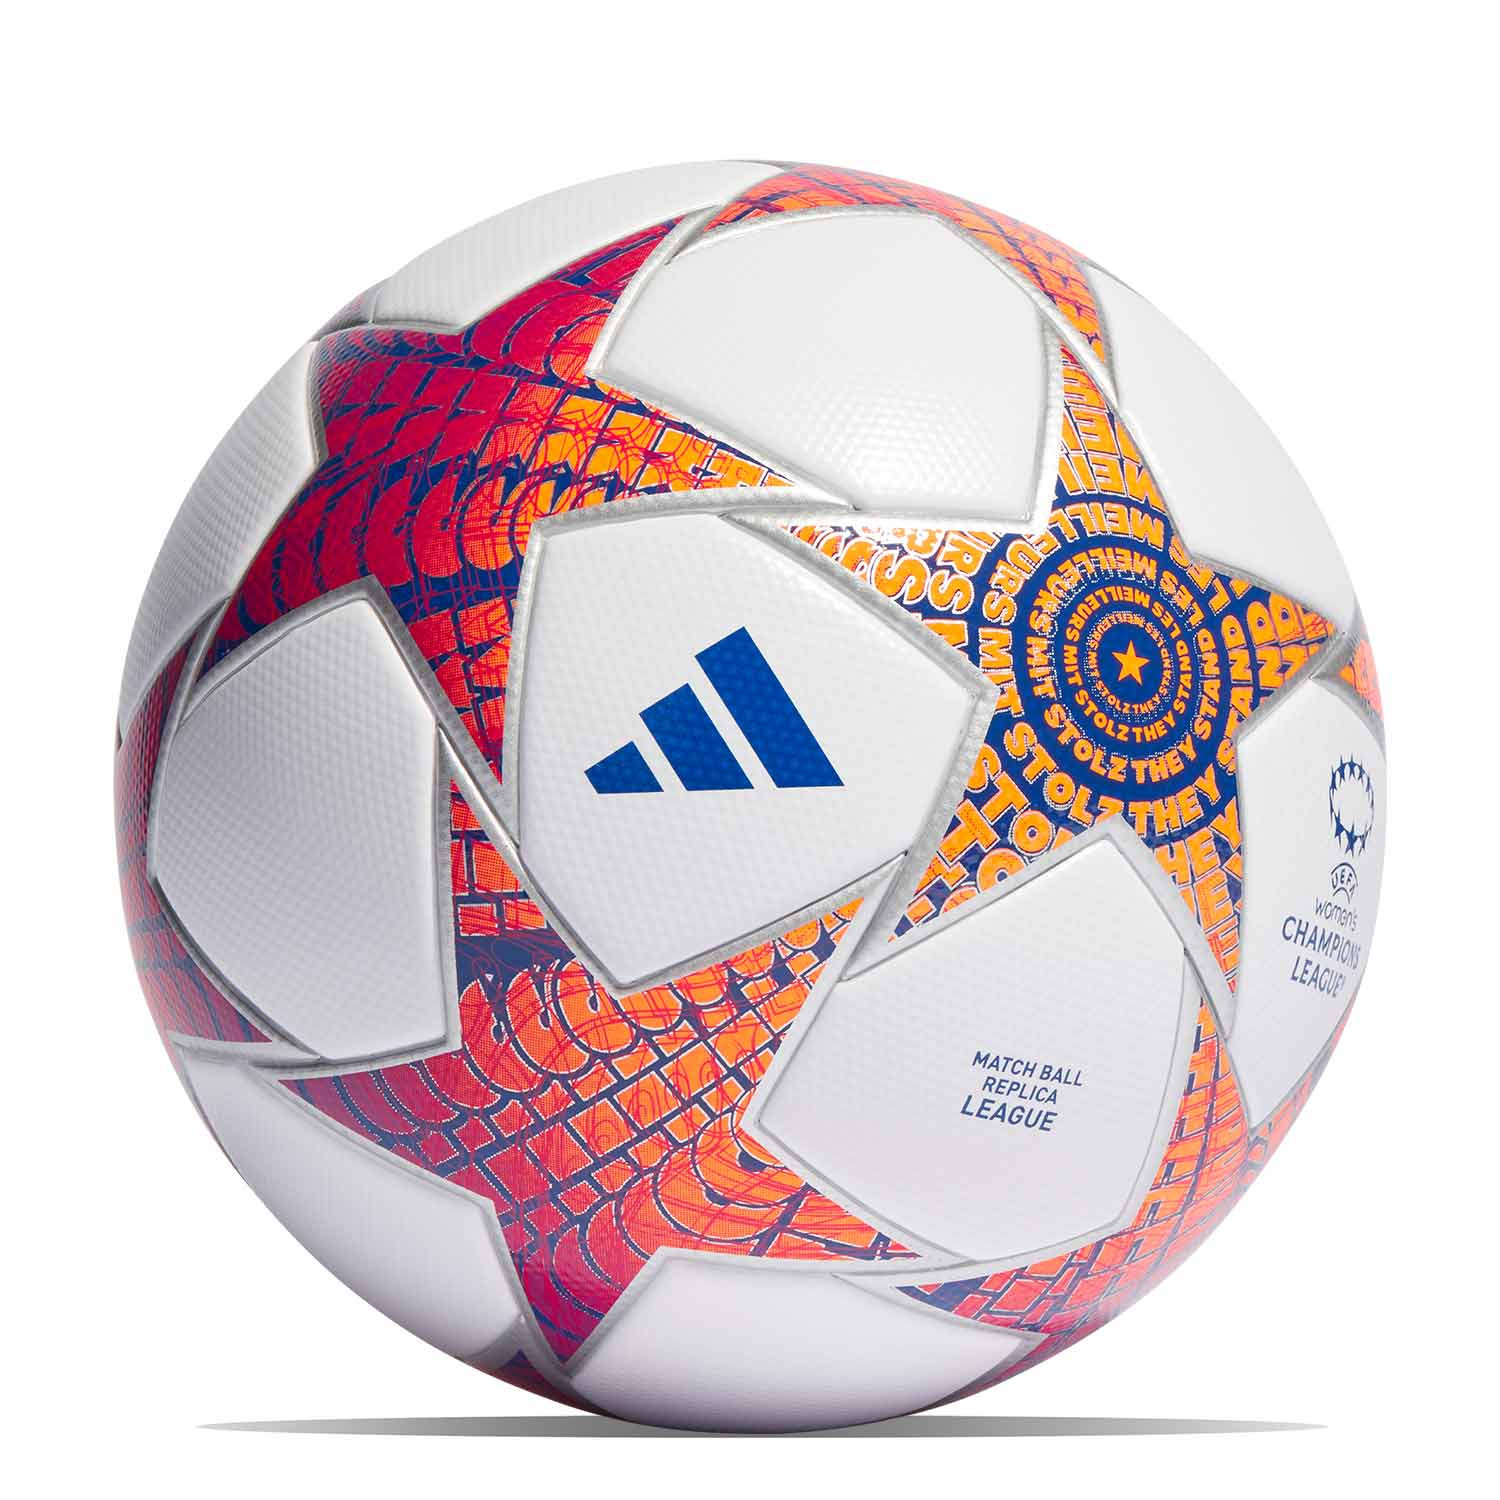 Comprar Balón de fútbol UEFA Champions League Real Madrid CF Adidas